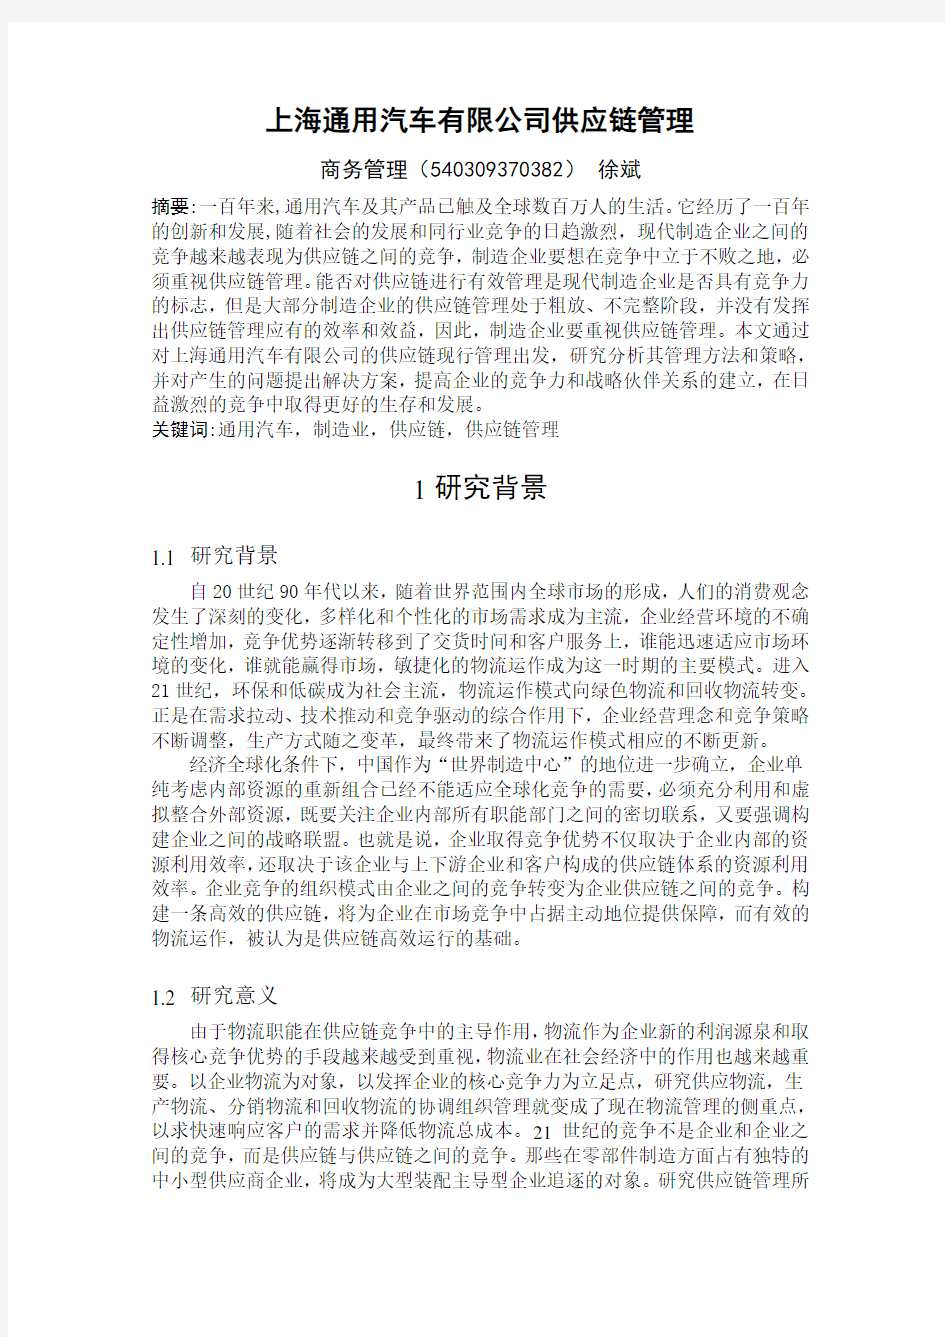 上海通用汽车有限公司供应链管理开题报告